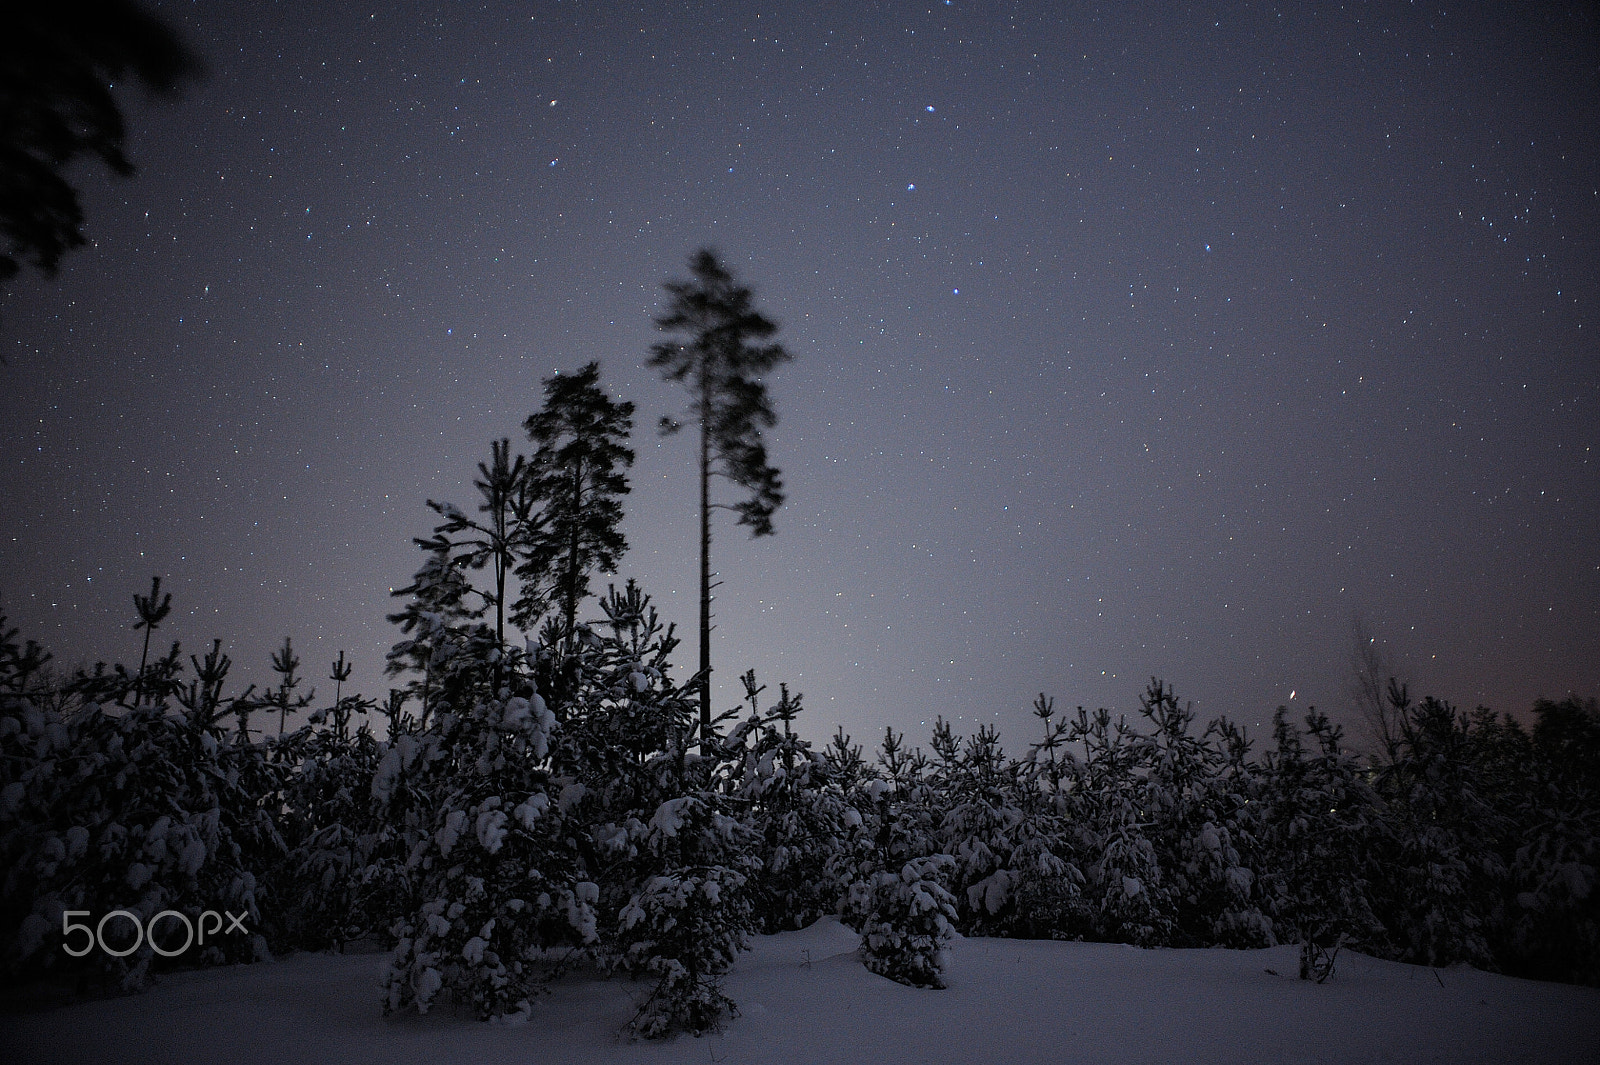 AF Nikkor 20mm f/2.8 sample photo. Winter fairytale photography